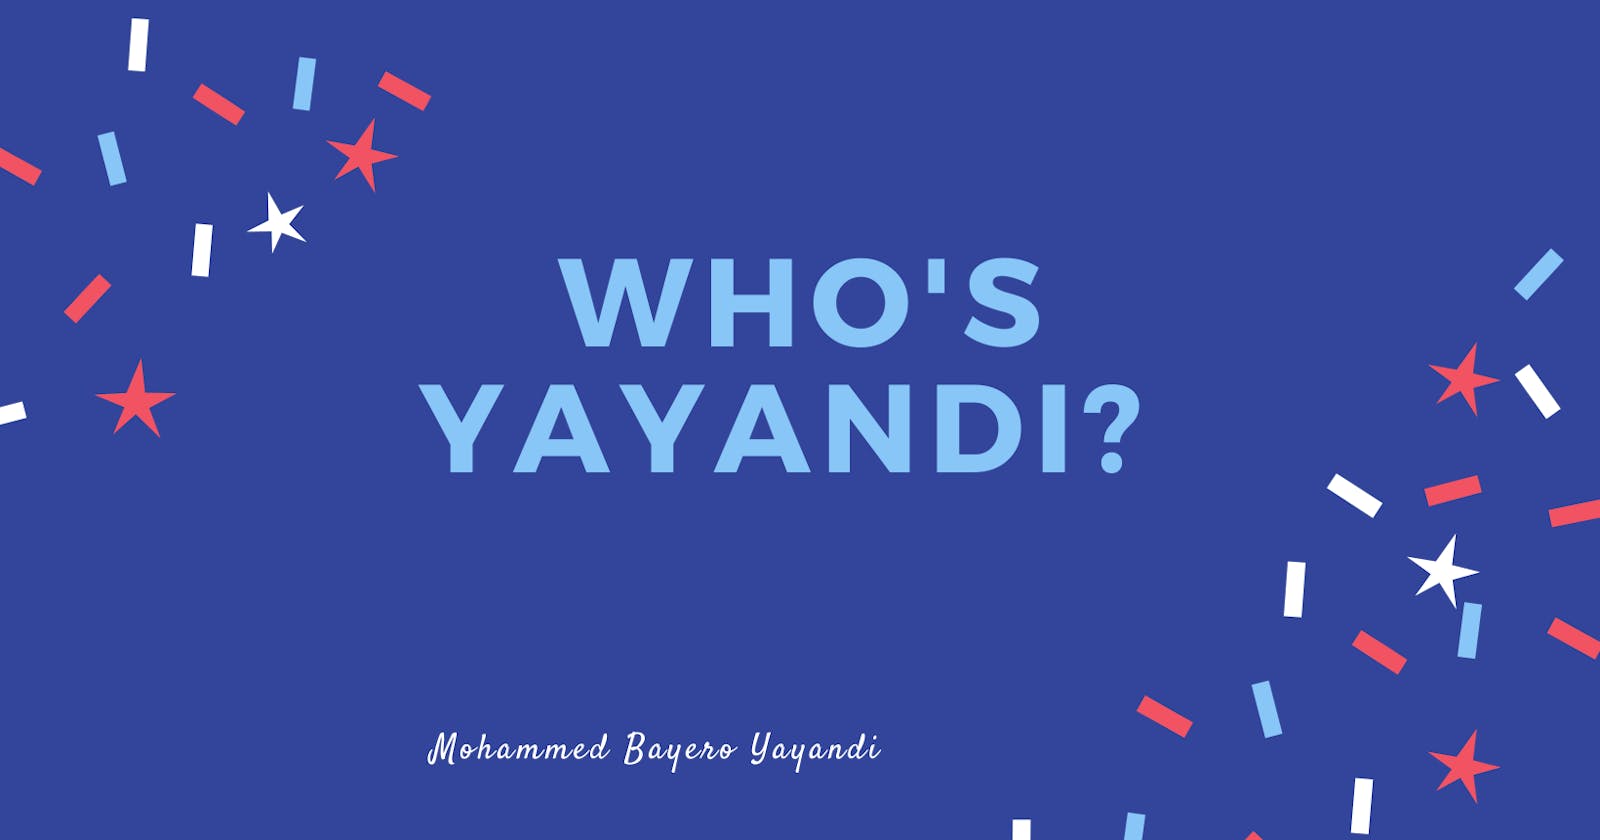 Who is Yayandi?